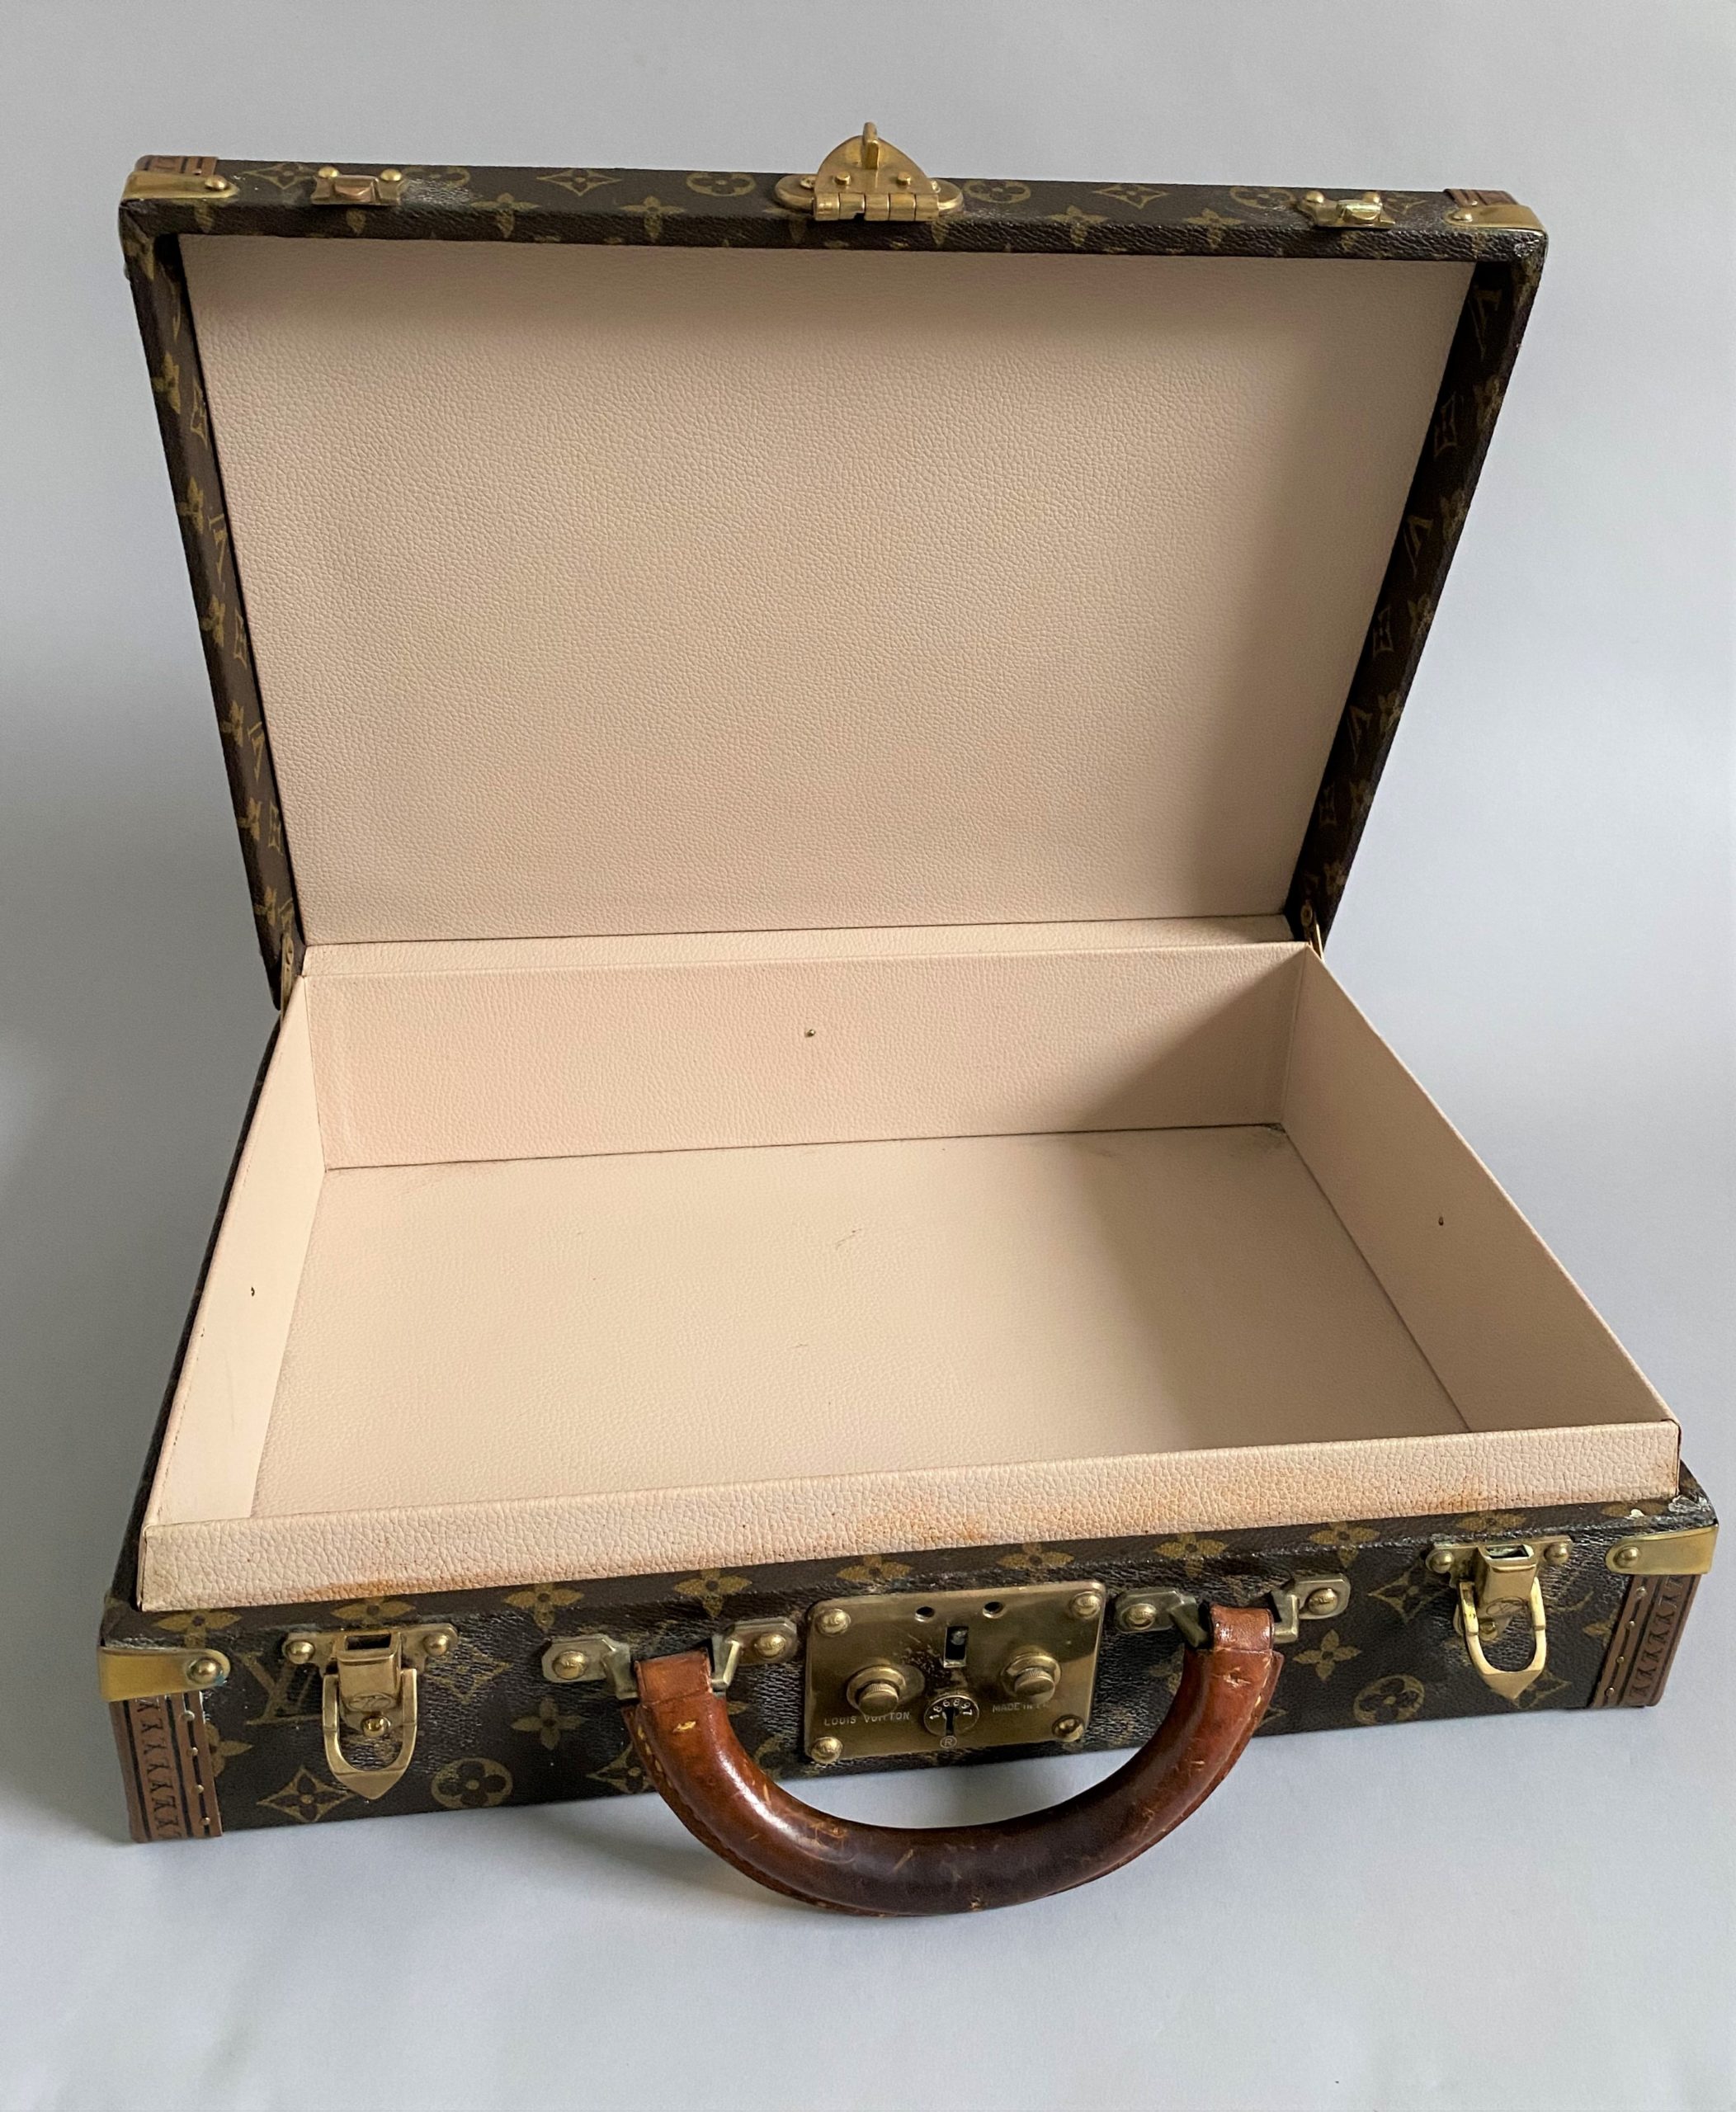 Sold at Auction: Louis Vuitton, Louis Vuitton rigid vintage suitcase